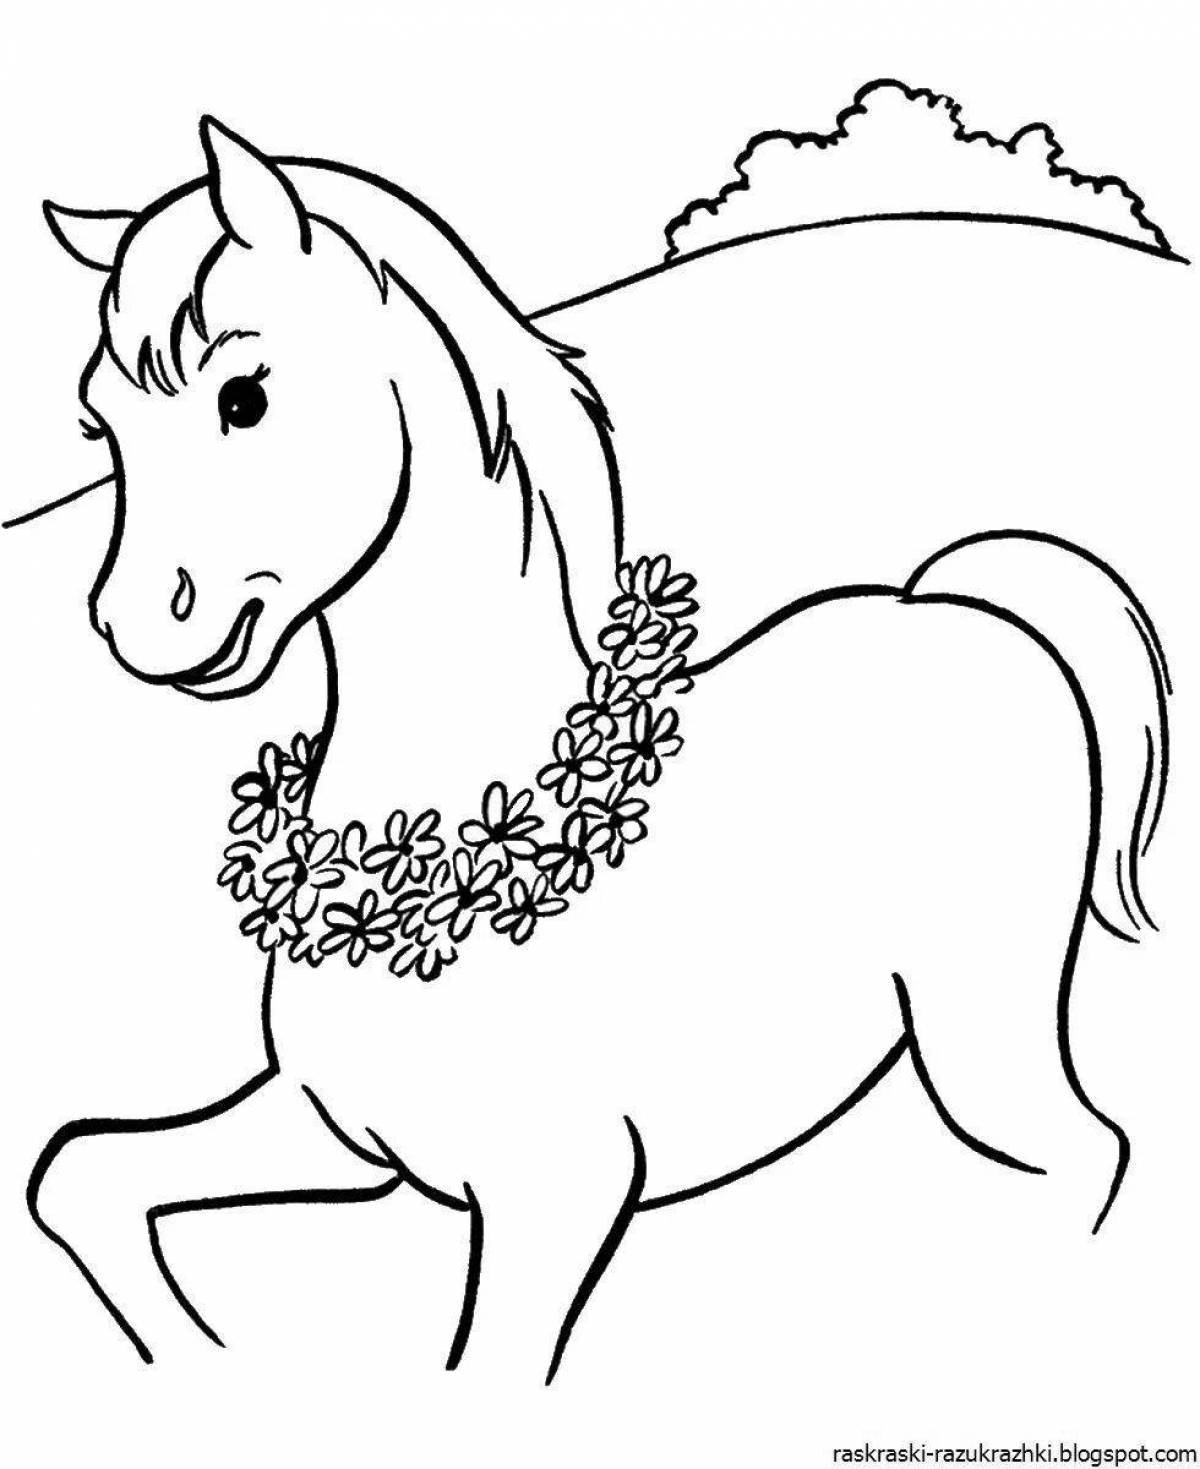 Сложная картинка раскраска Лошадь